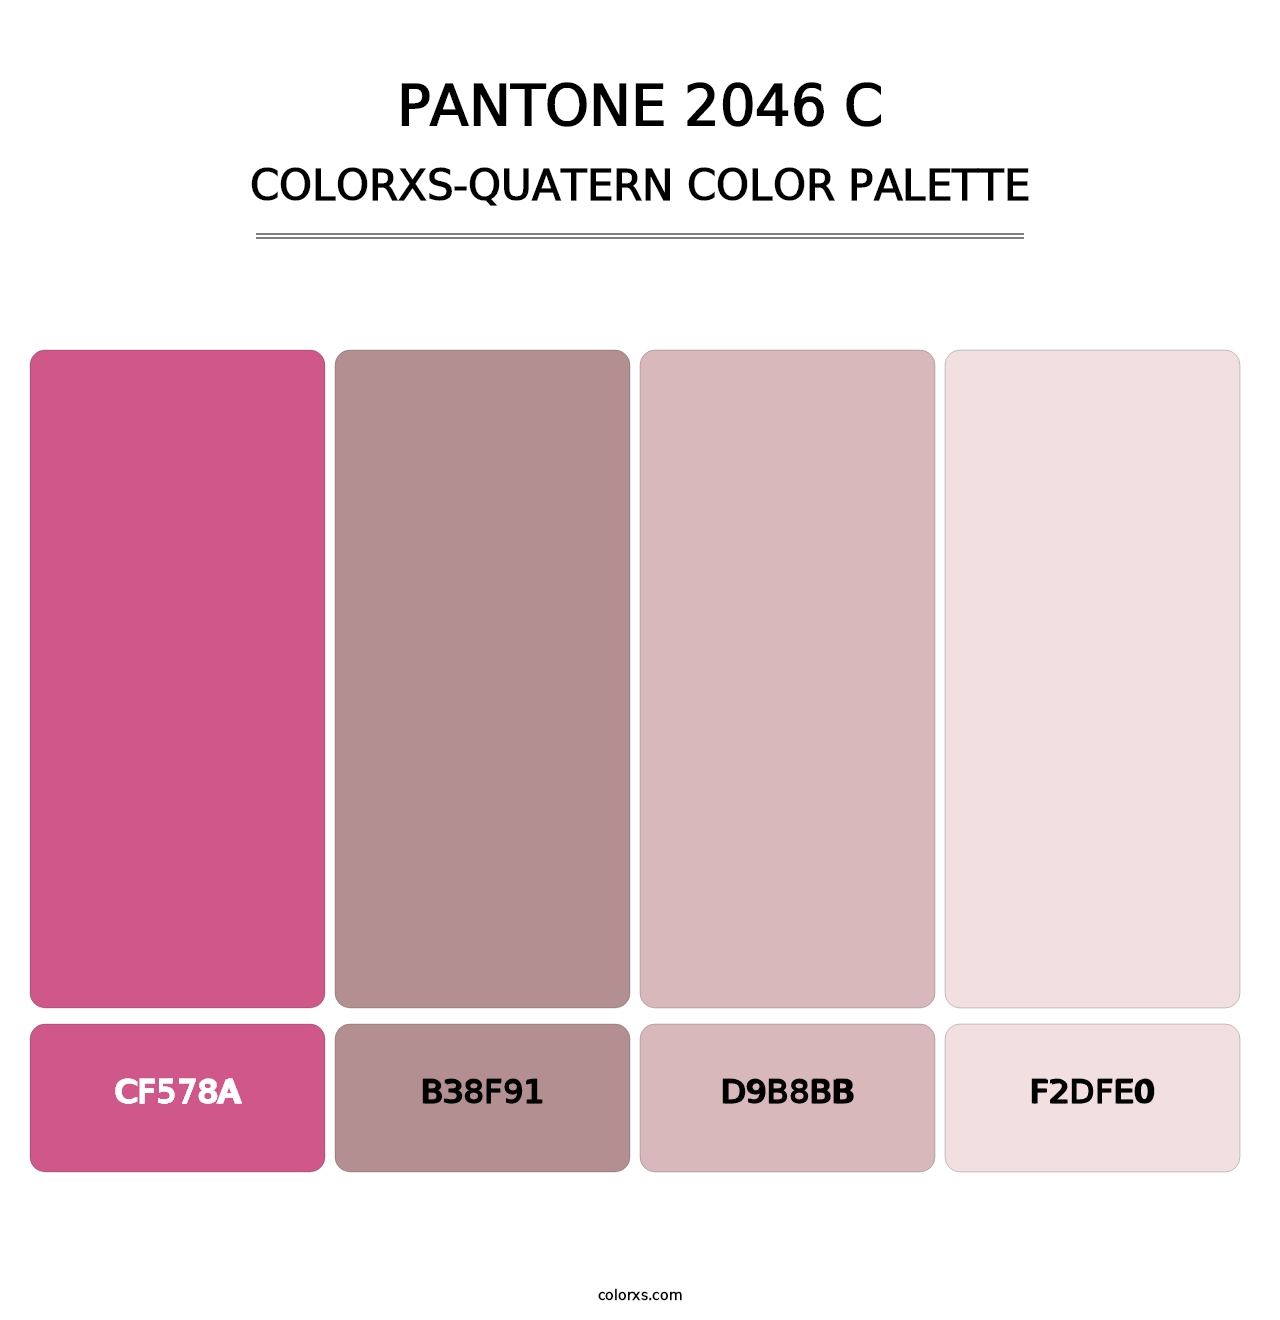 PANTONE 2046 C - Colorxs Quatern Palette